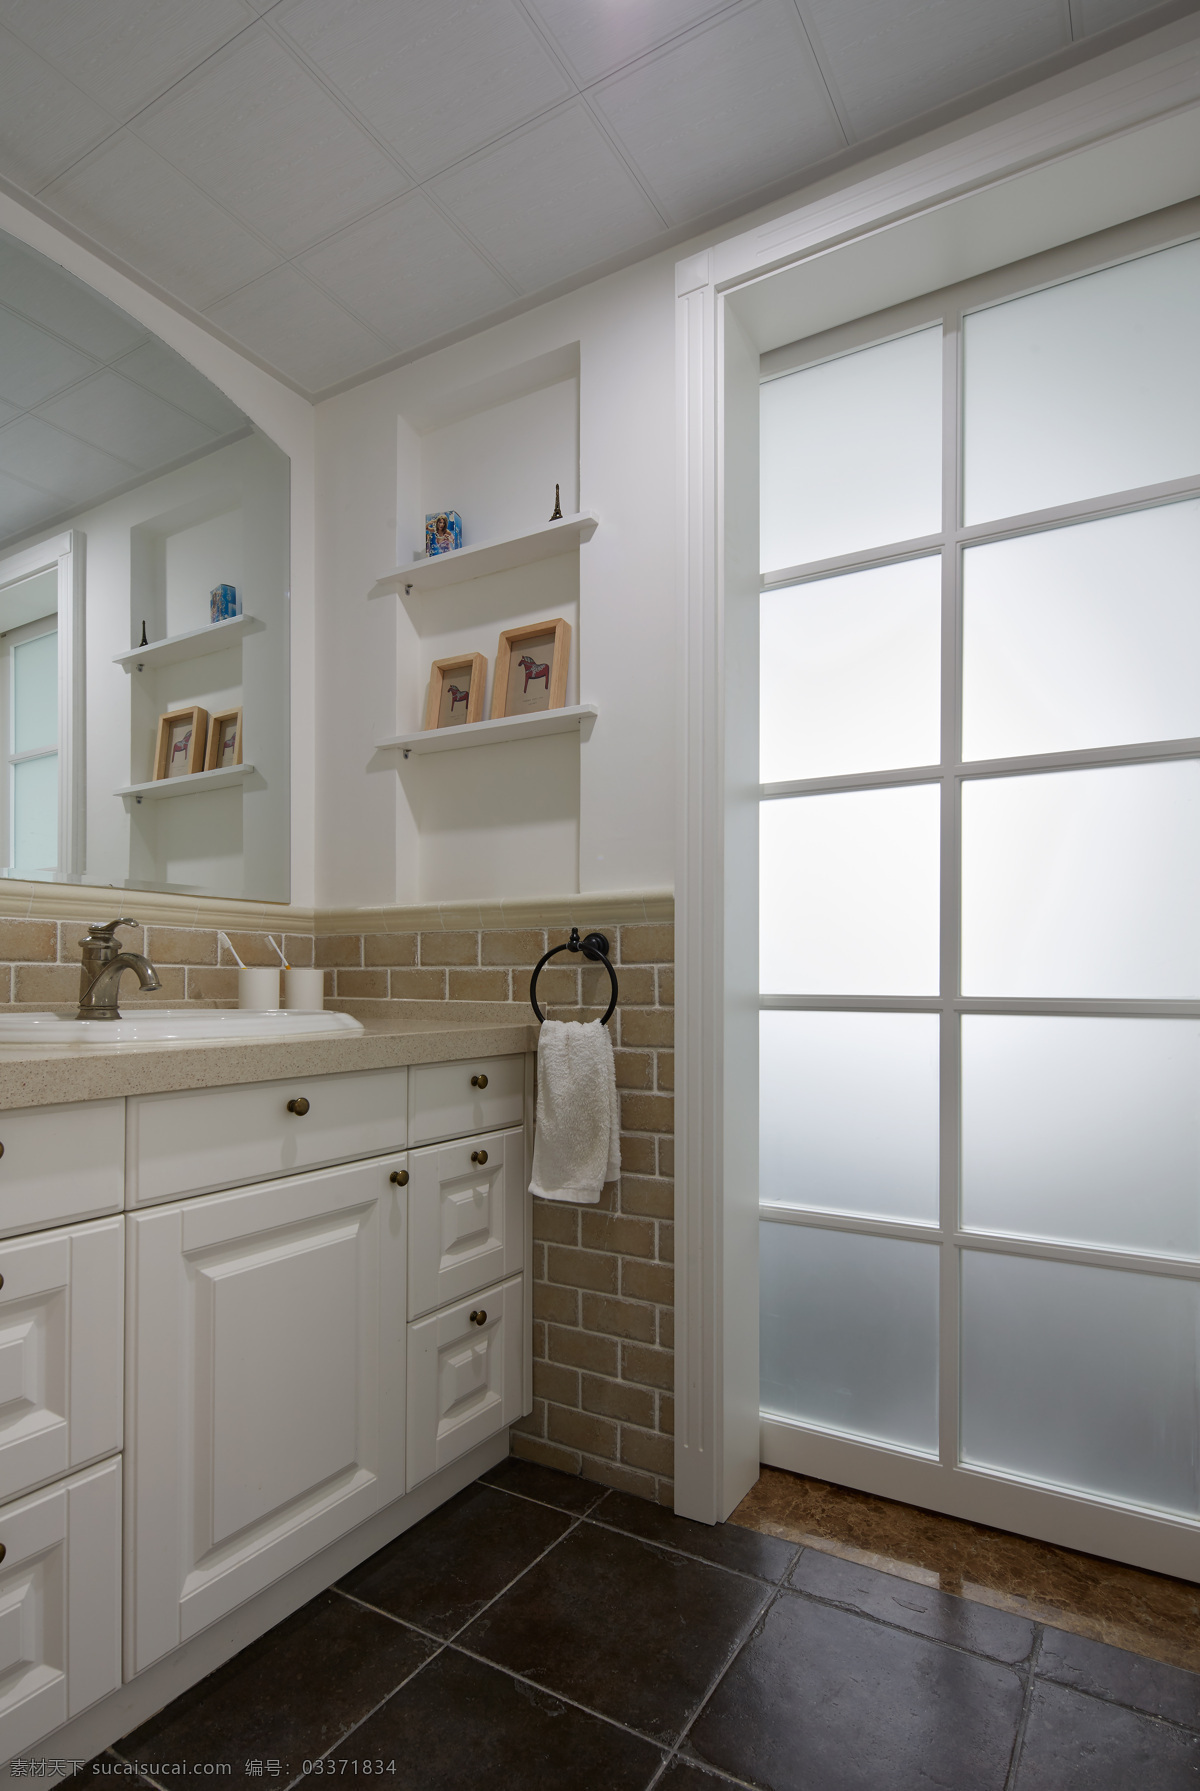 现代 清新 卫生间 玻璃门 室内装修 效果图 格子地板 白色洗手台 白色玻璃门 白色背景墙